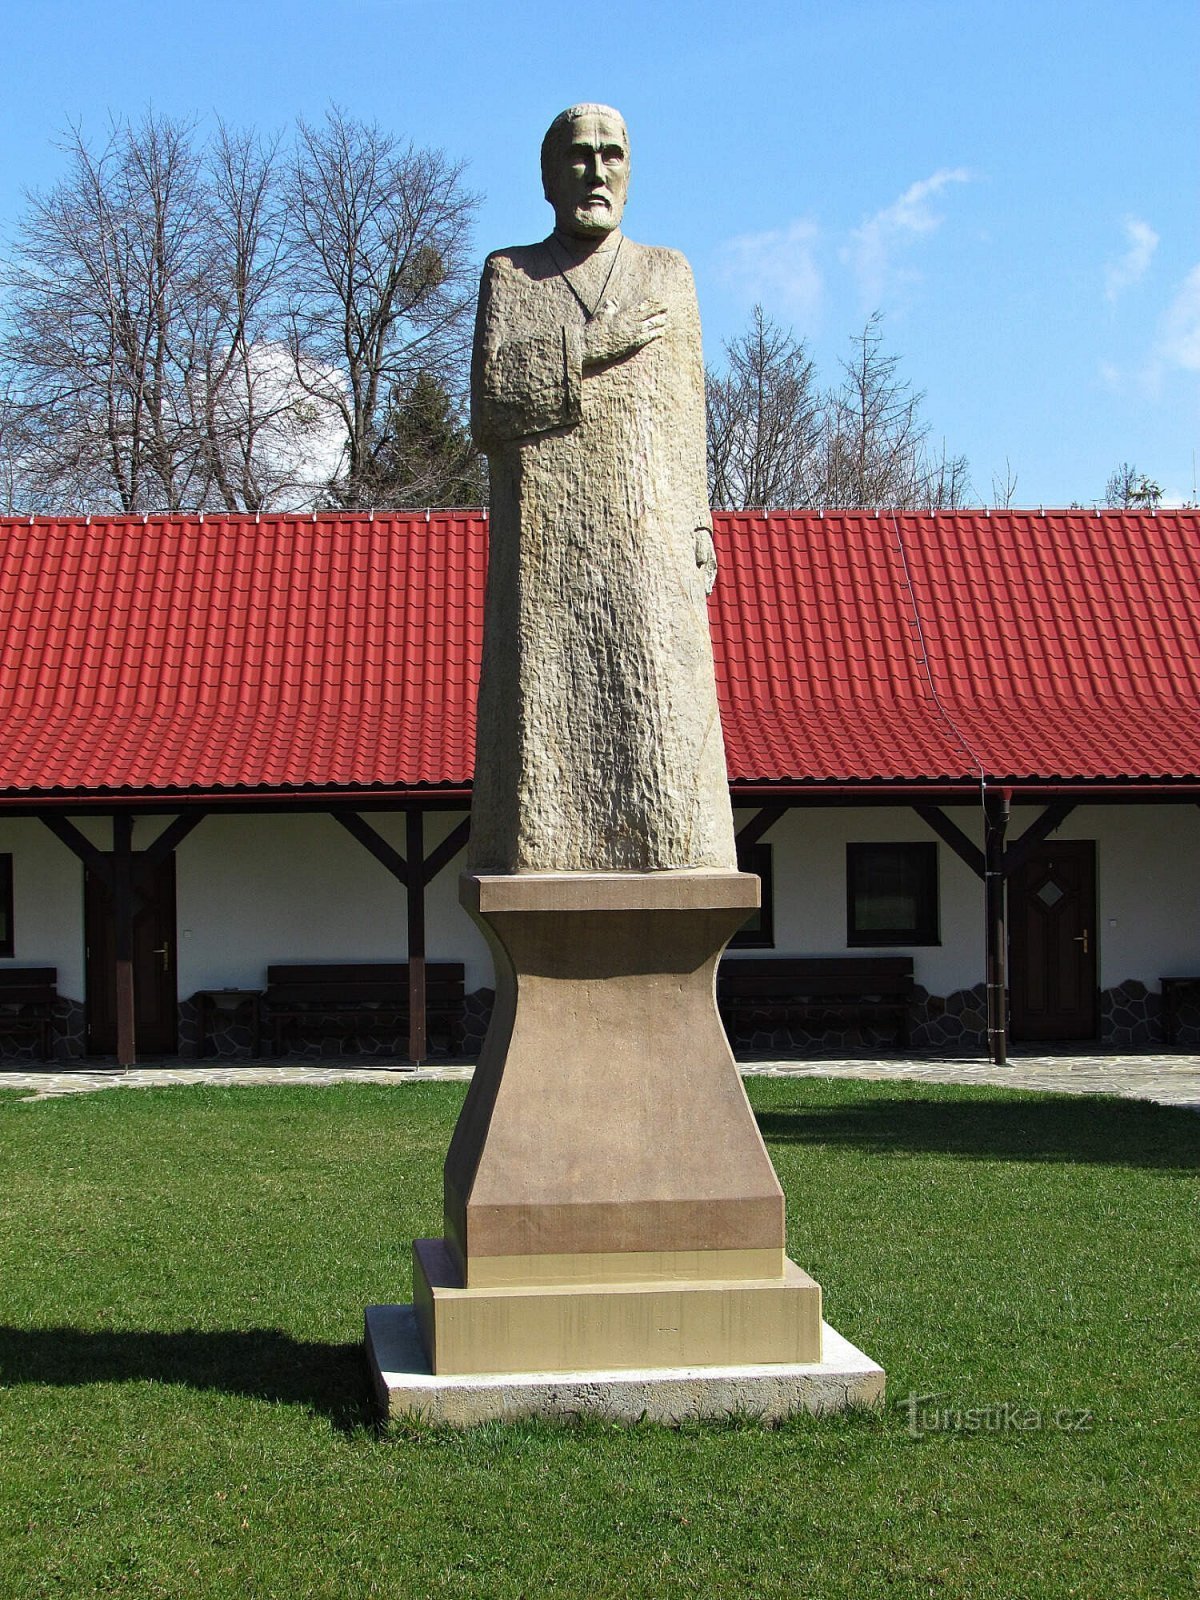 Prženské Paseky - a statue of Hus and a plinth without a statue